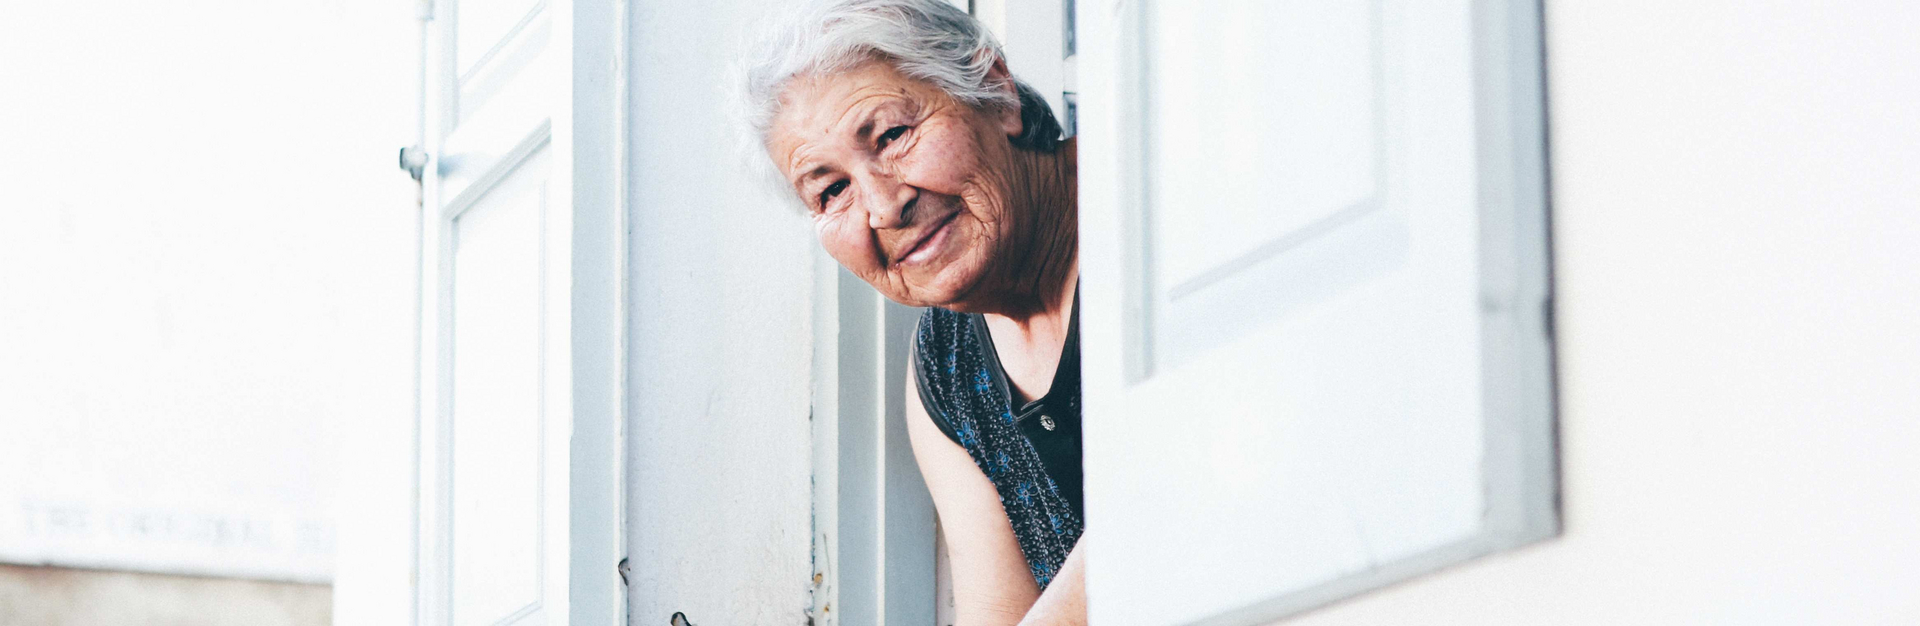 Une femme atteinte d'Alzheimer regarde par la fenêtre